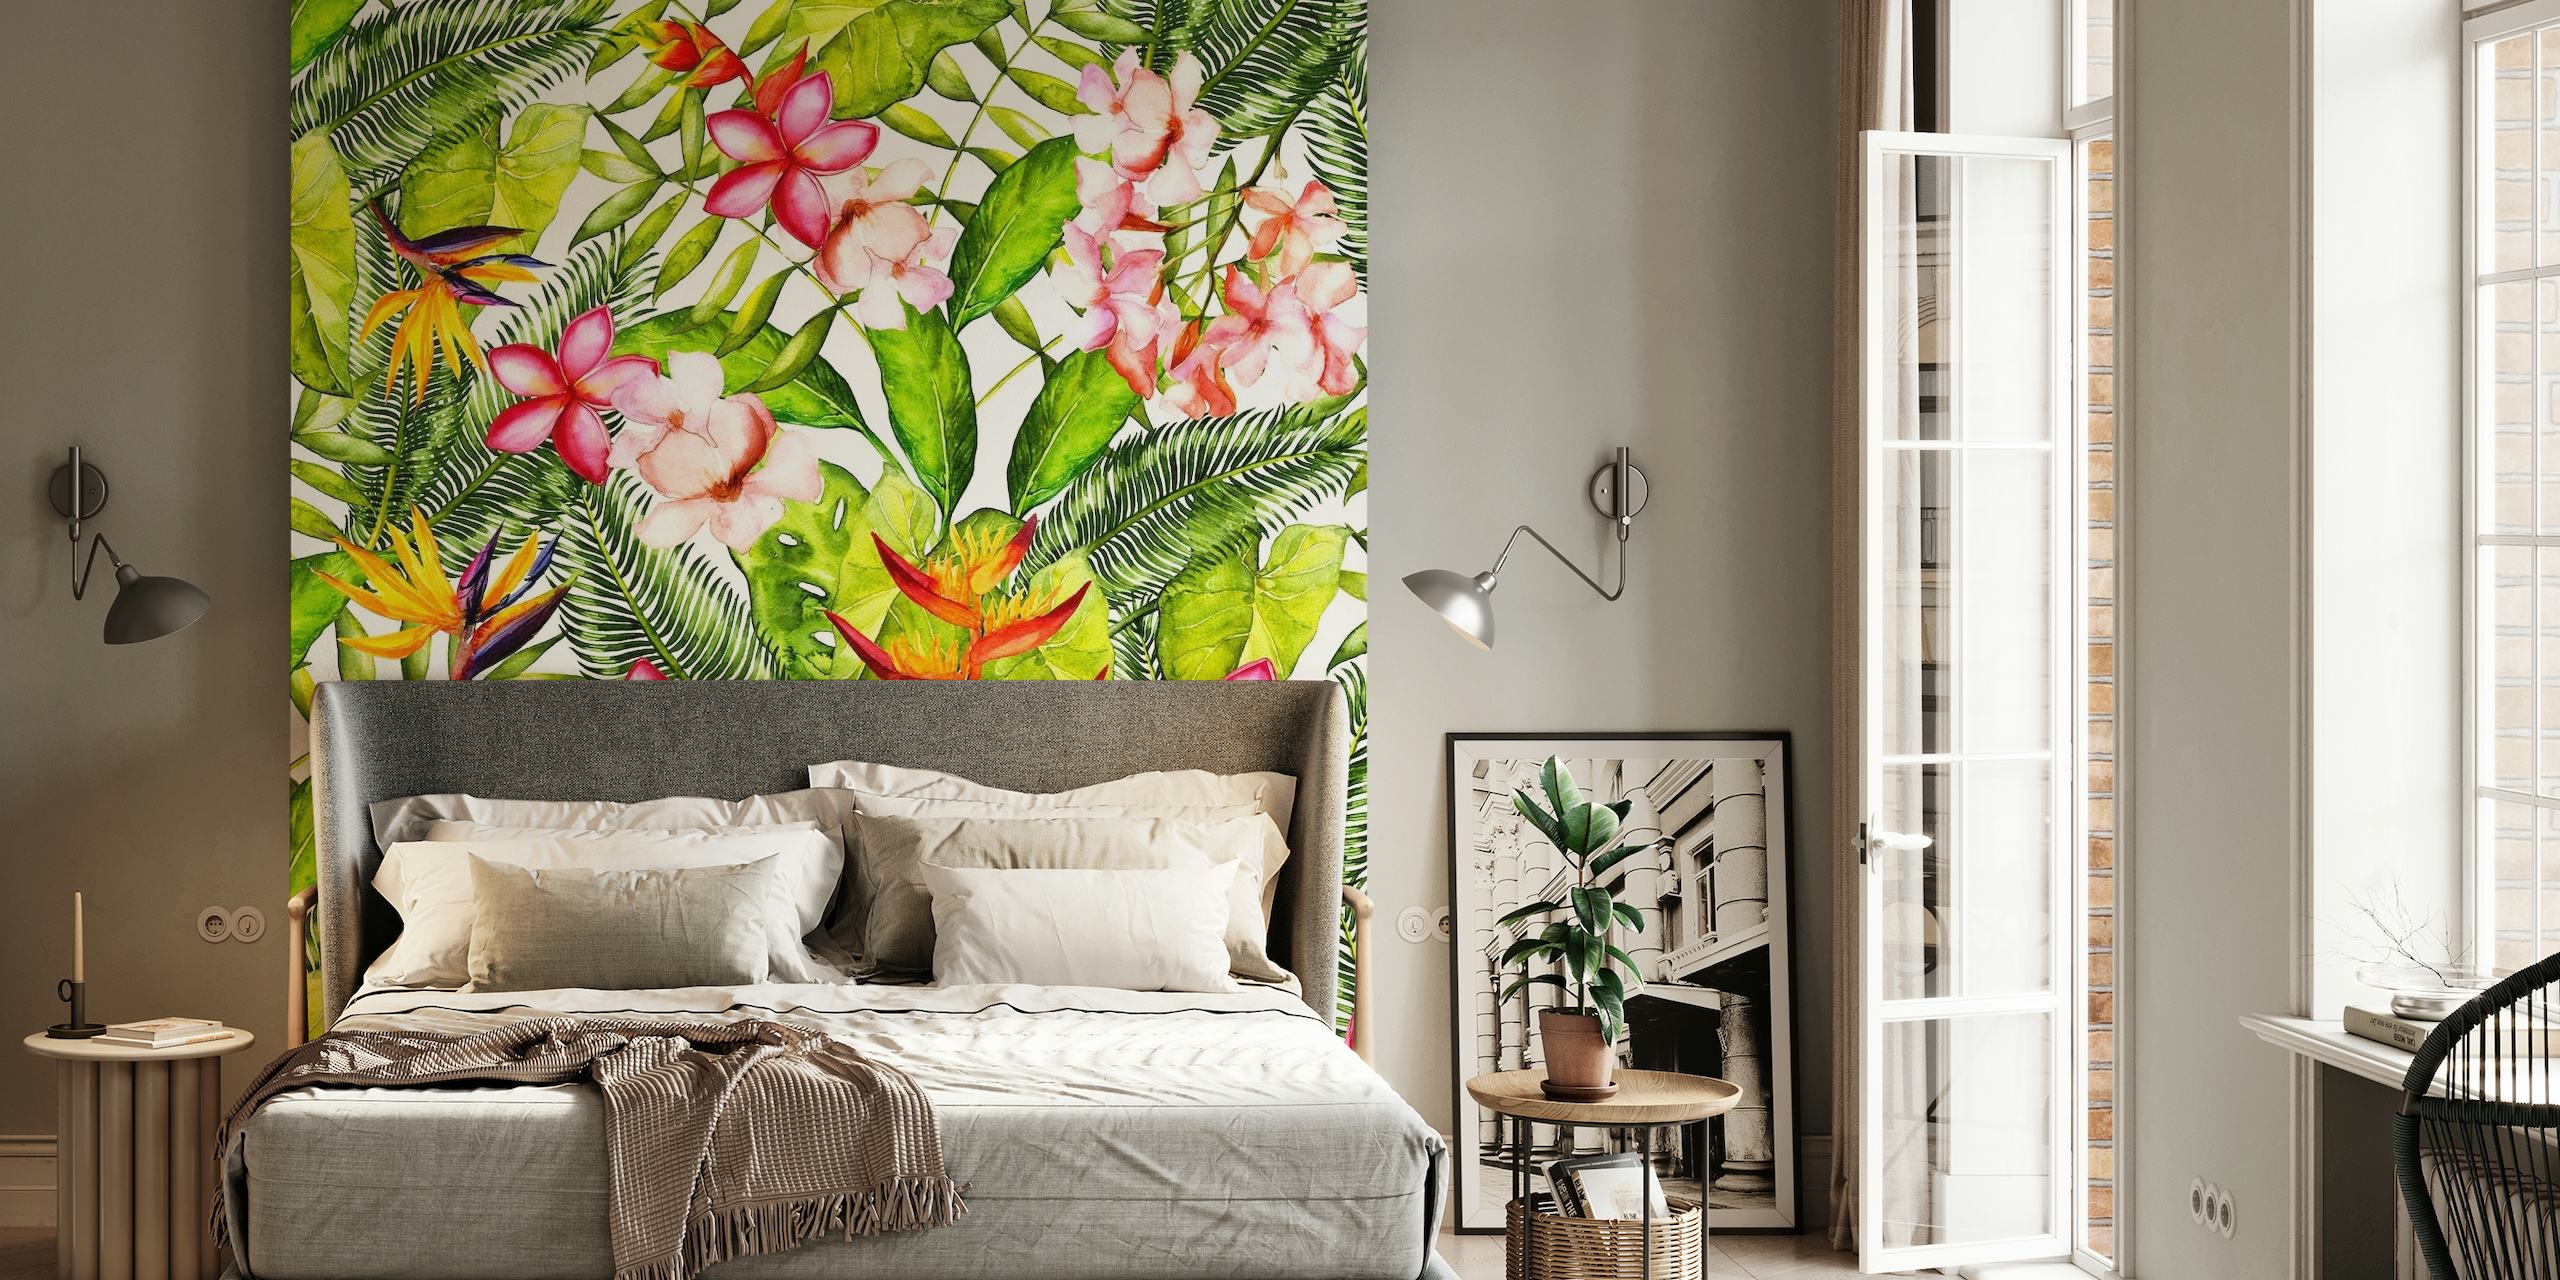 Fotomural vinílico de parede Plumeria e flores tropicais da selva com vegetação exuberante e flores rosa